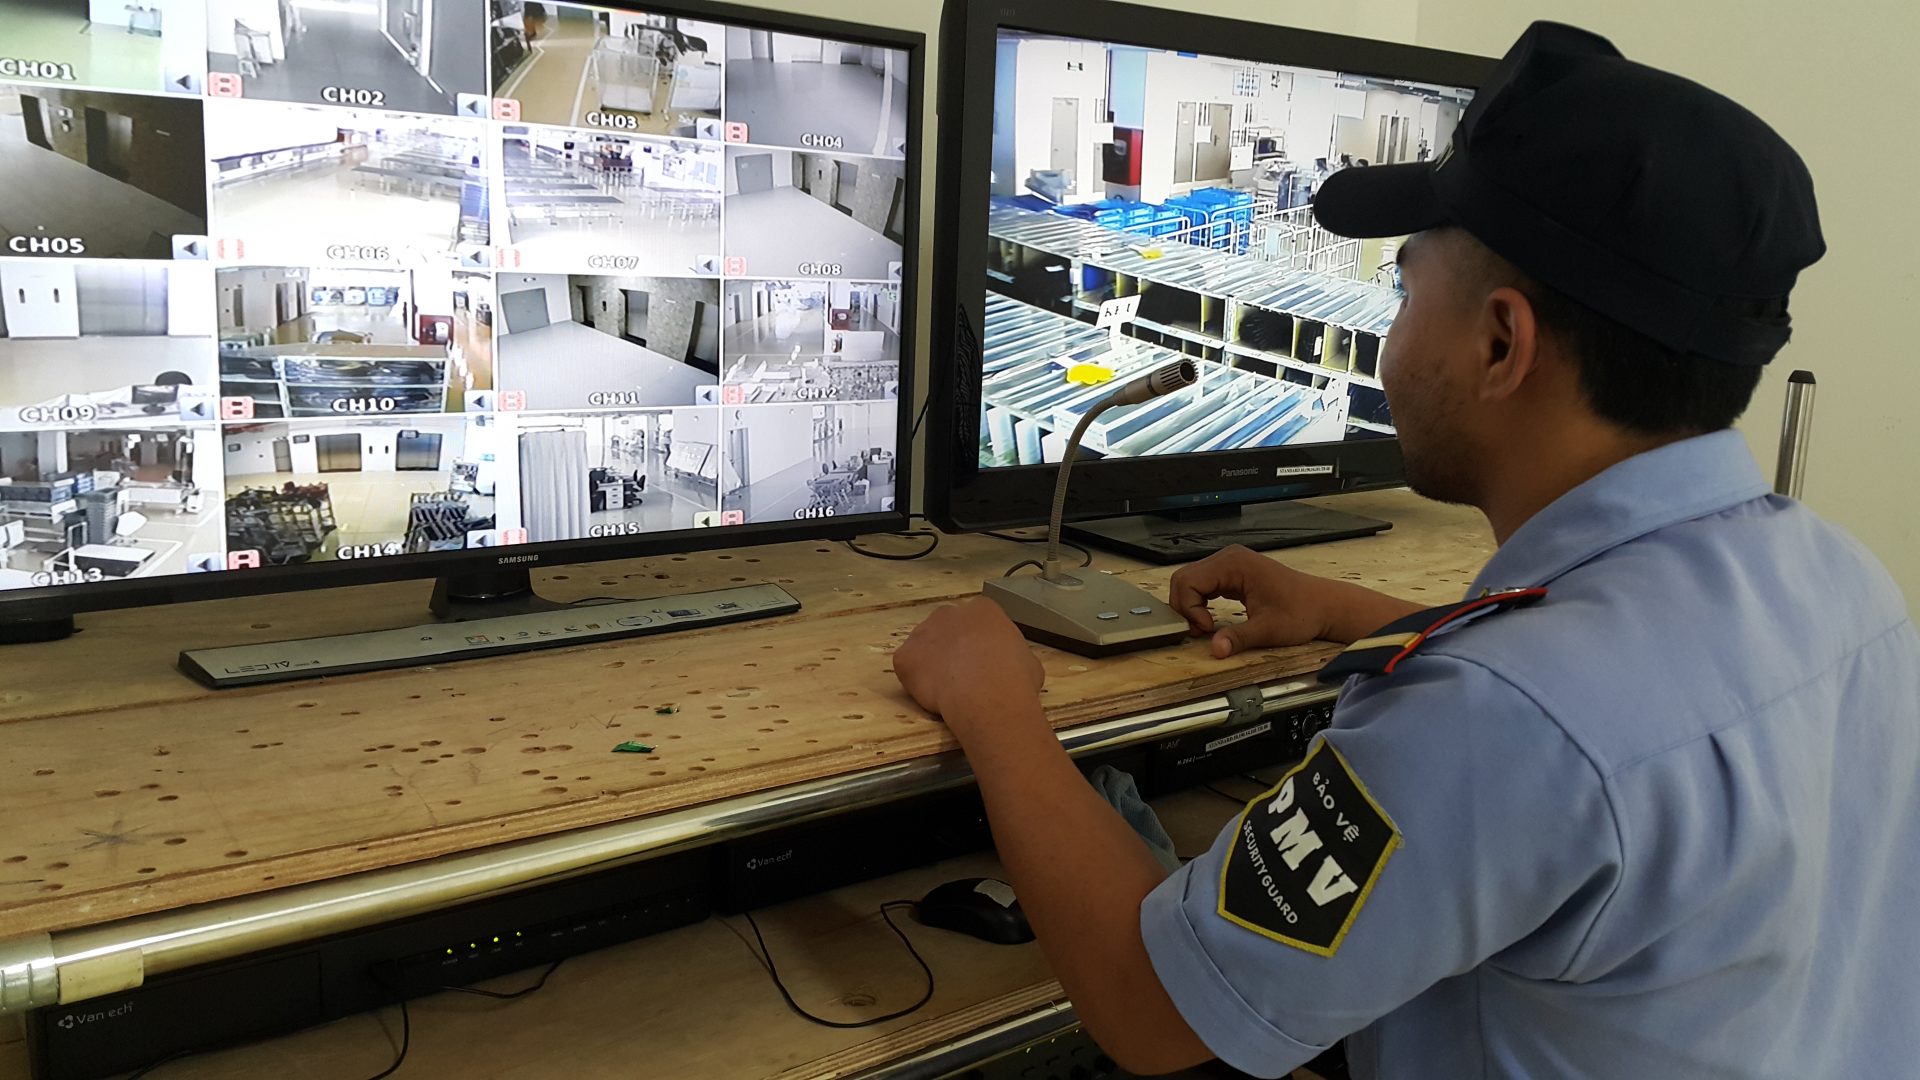 Nhân viên bảo vệ điều hành và kiểm soát hệ thống camera giám sát